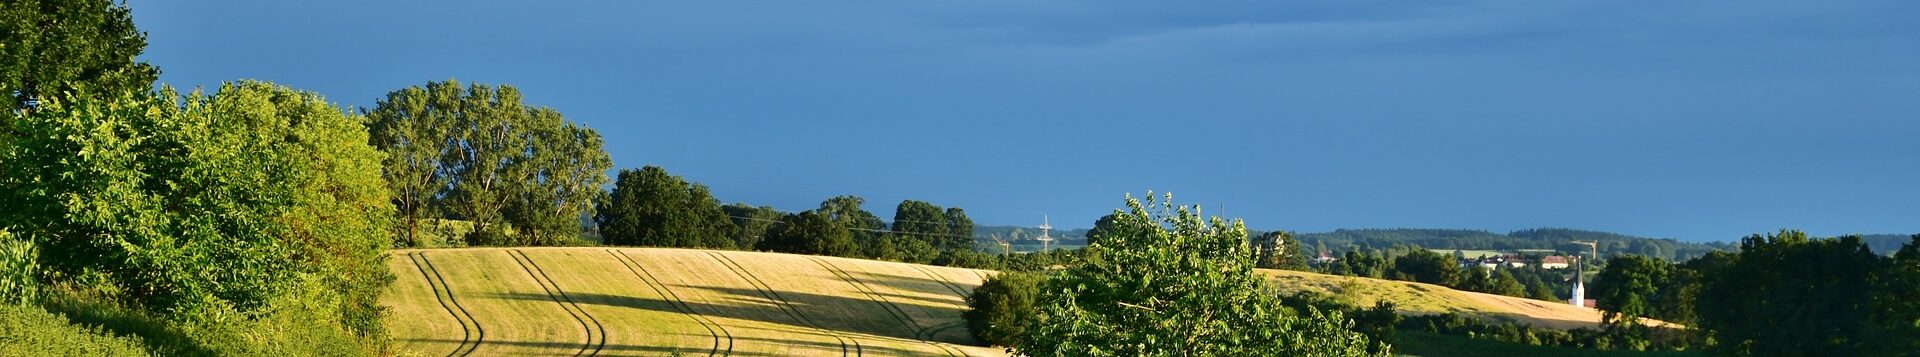 Landschaft mit Getreidefeldern, Hecken und Bäumen.